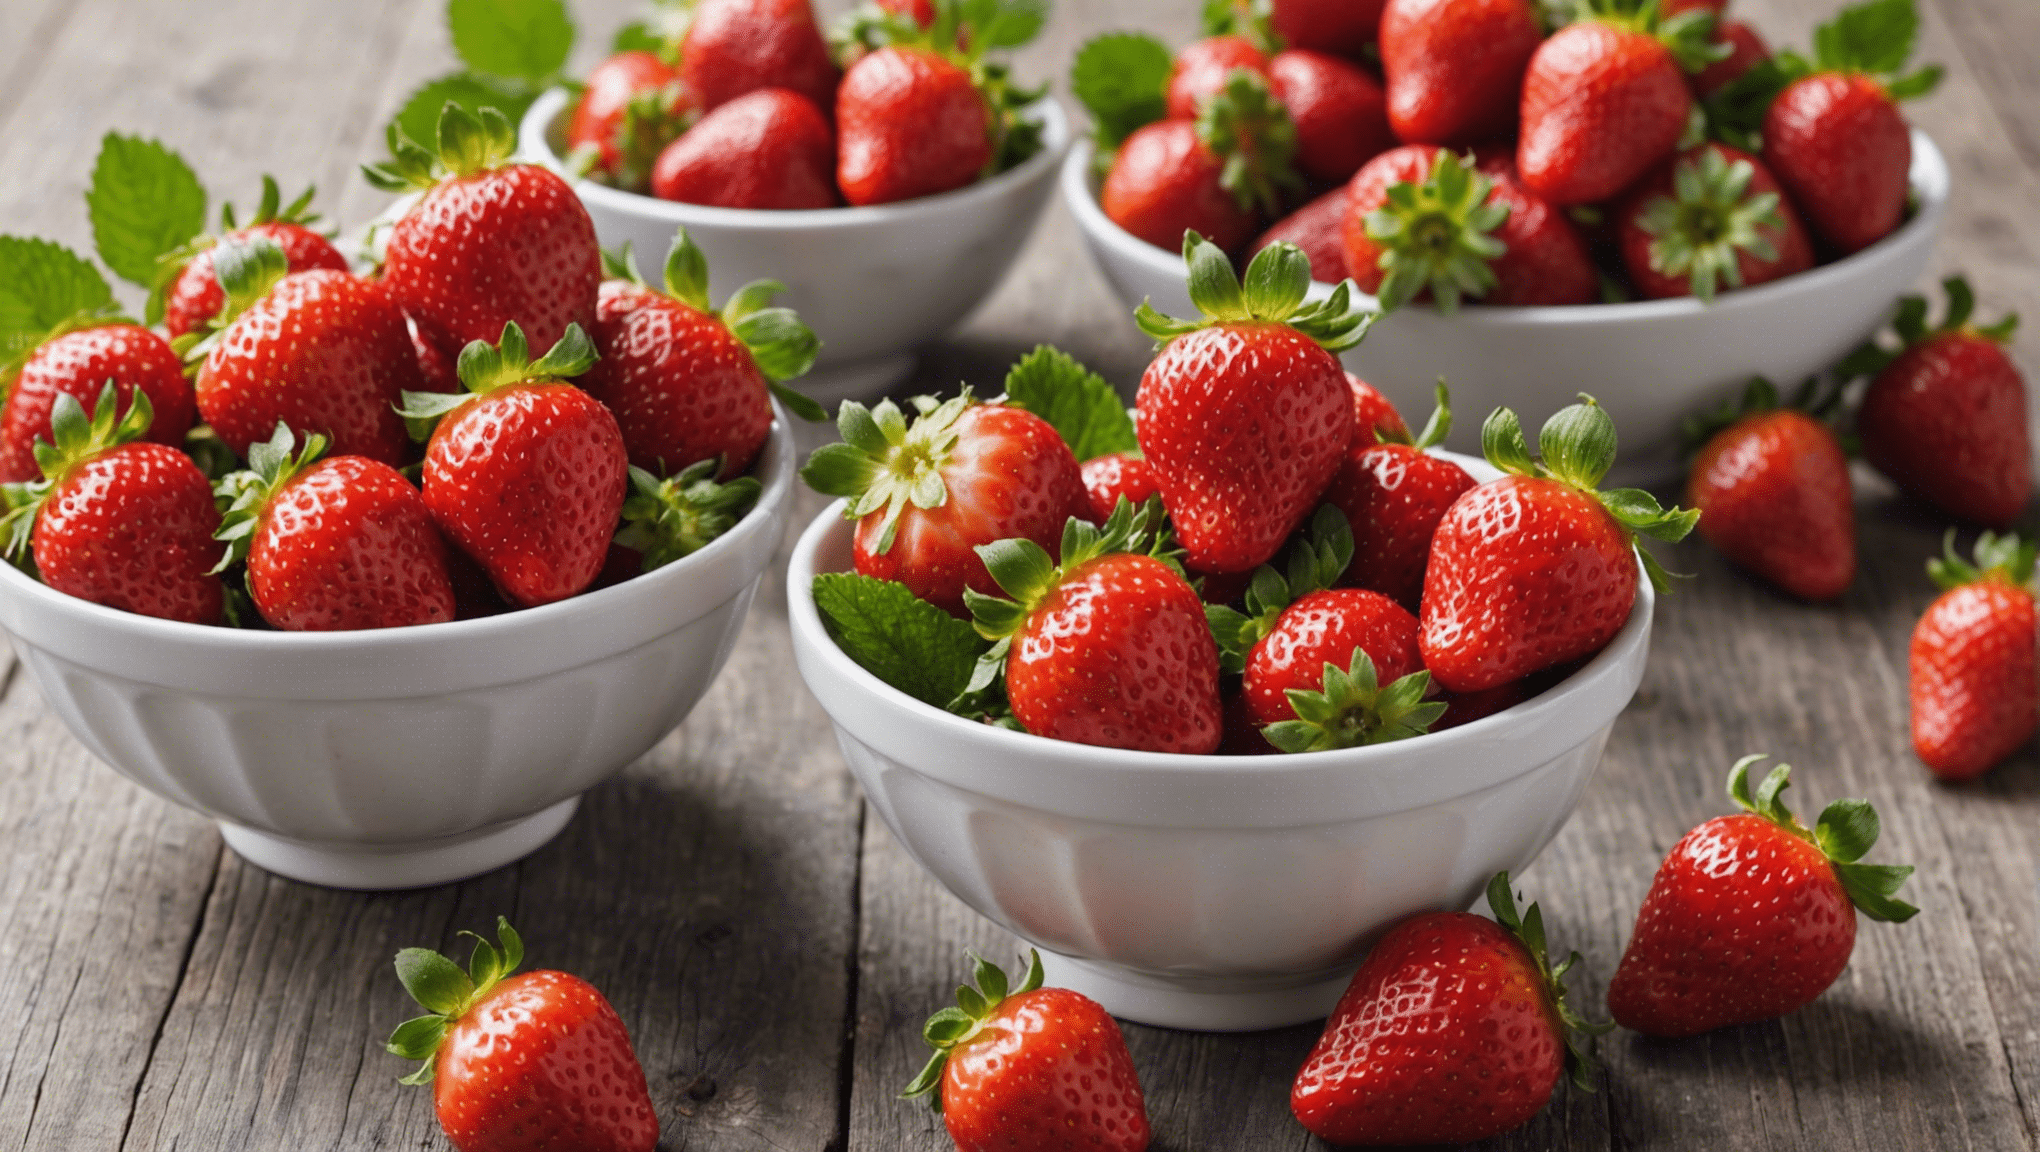 découvrez le secret pour cultiver des fraisiers et récolter des fraises parfaites et saines avec nos conseils contre les maladies.